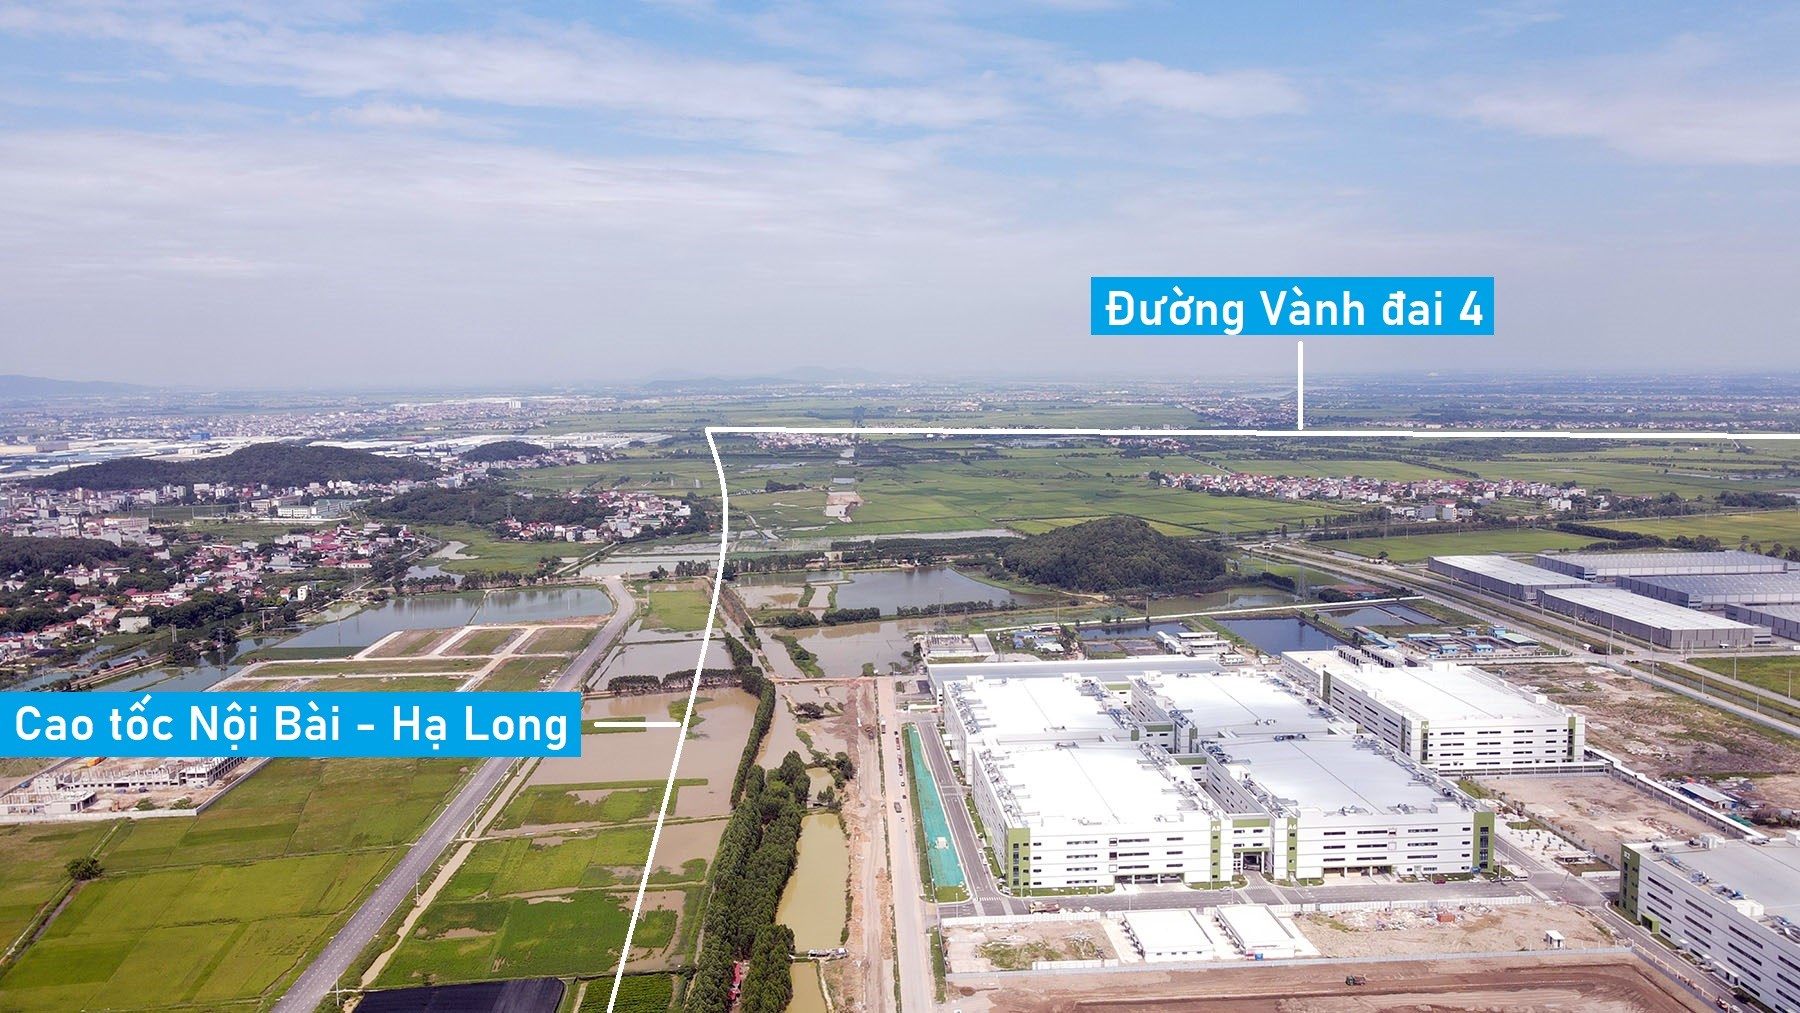 Cận cảnh khu công nghiệp - đô thị 1.000 ha đang triển khai gần hai cao tốc ở Bắc Ninh